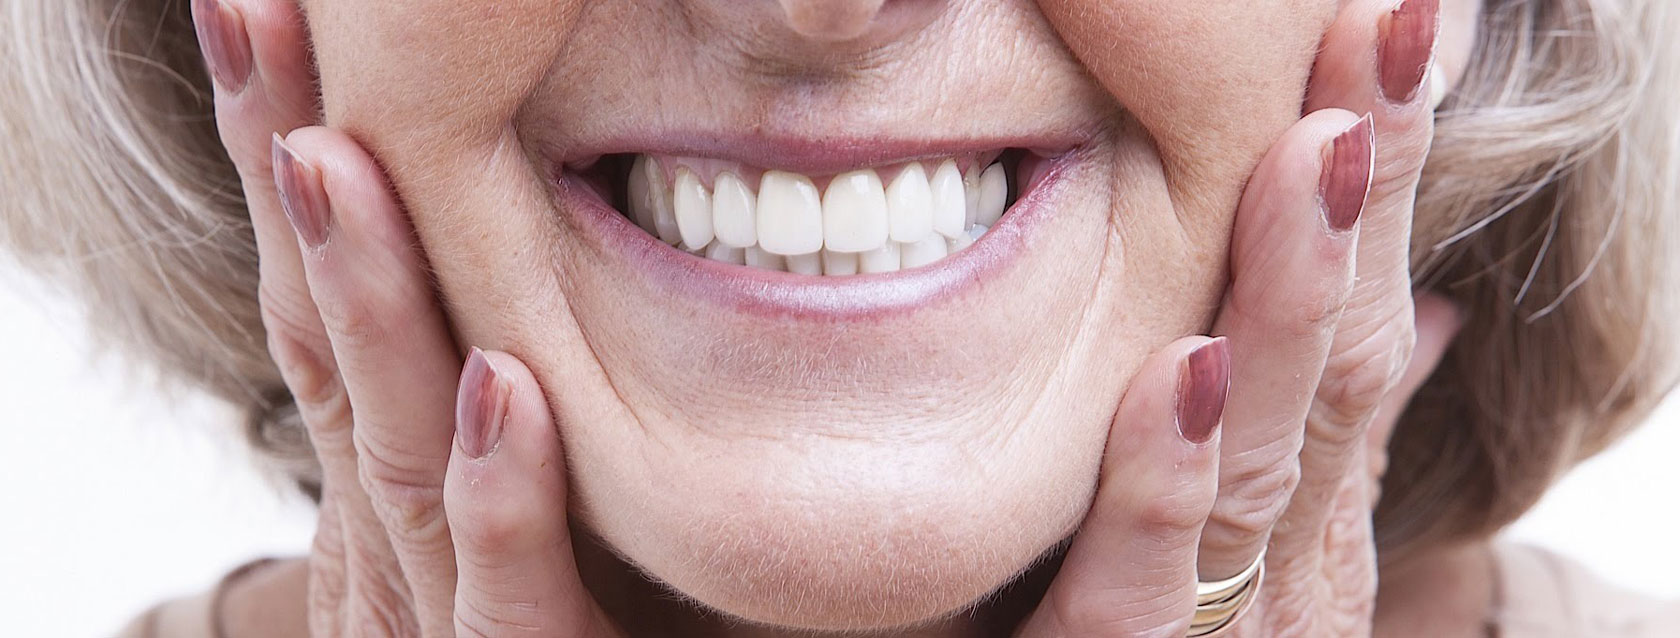 Απώλεια δοντιών πρόληψη και αποκατάσταση | AthensSmile